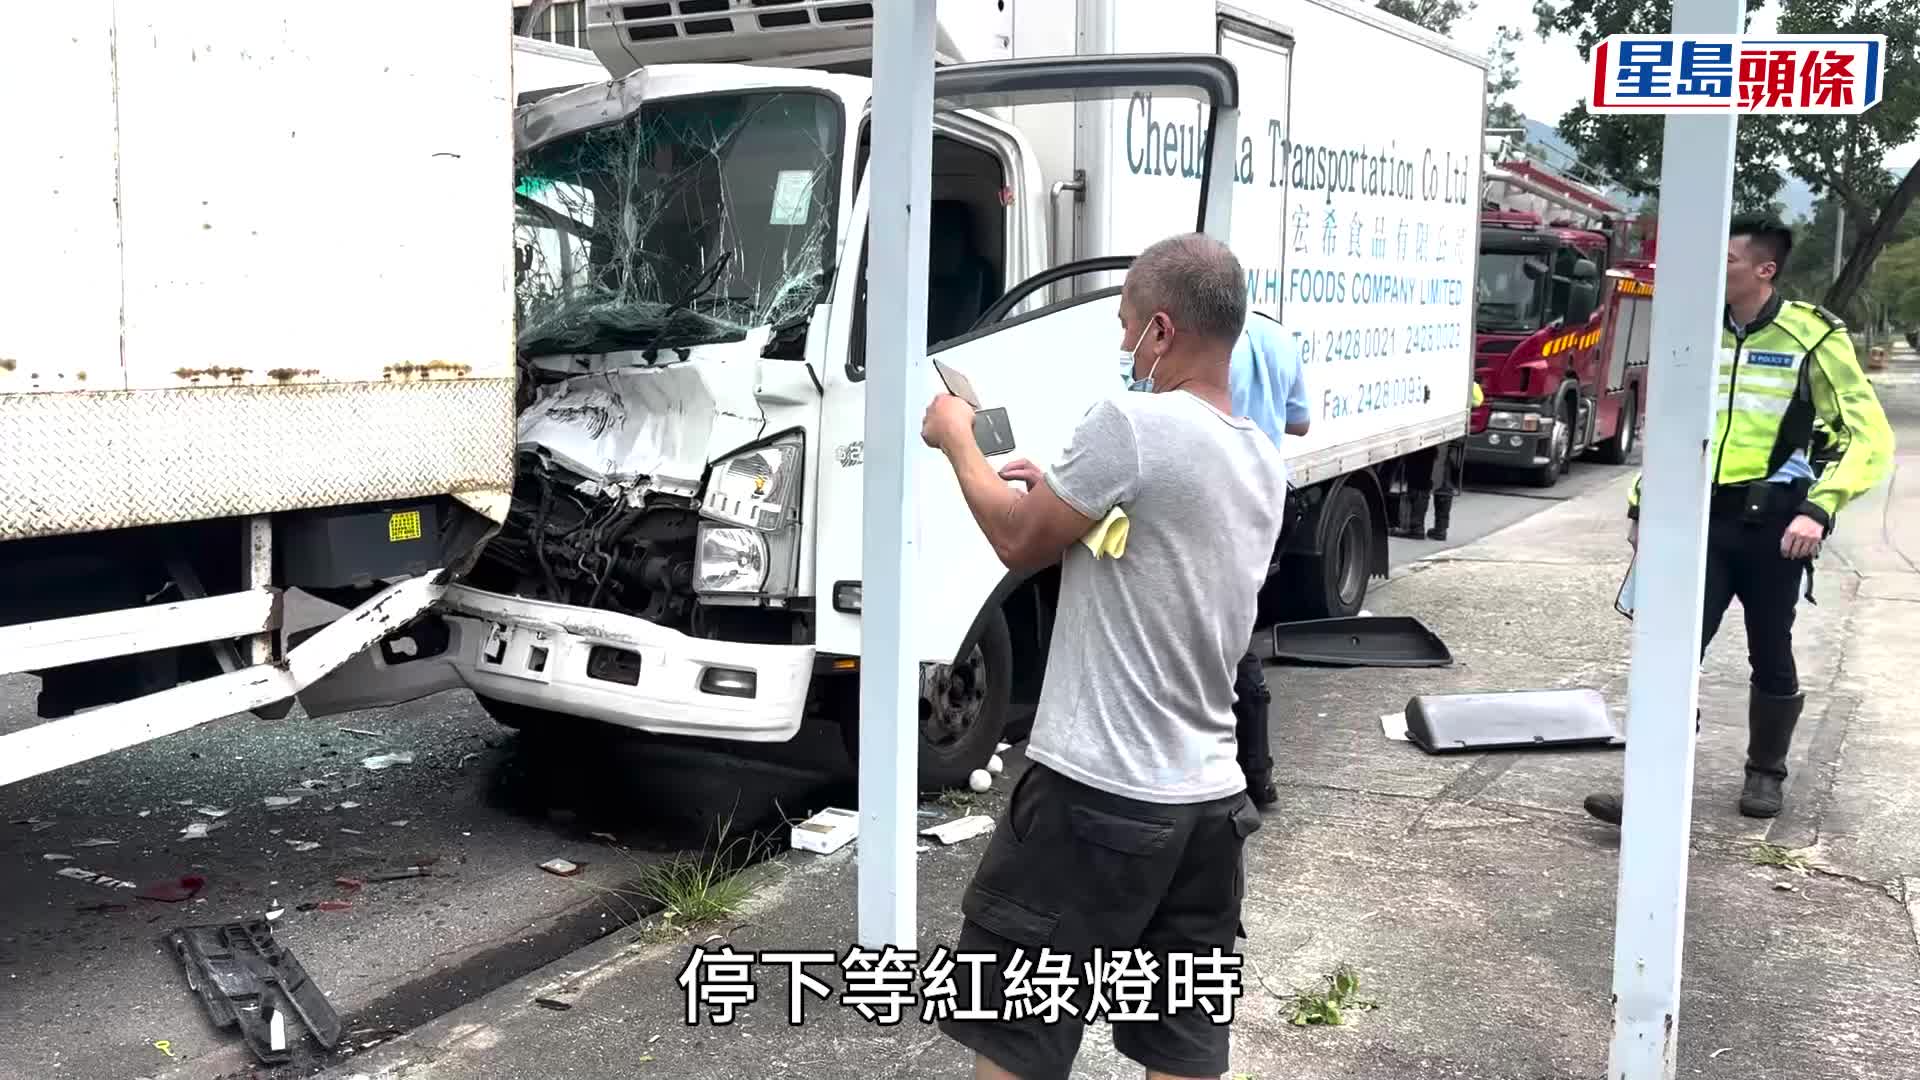 大埔工業邨兩貨車相撞 一司機被困消防救出